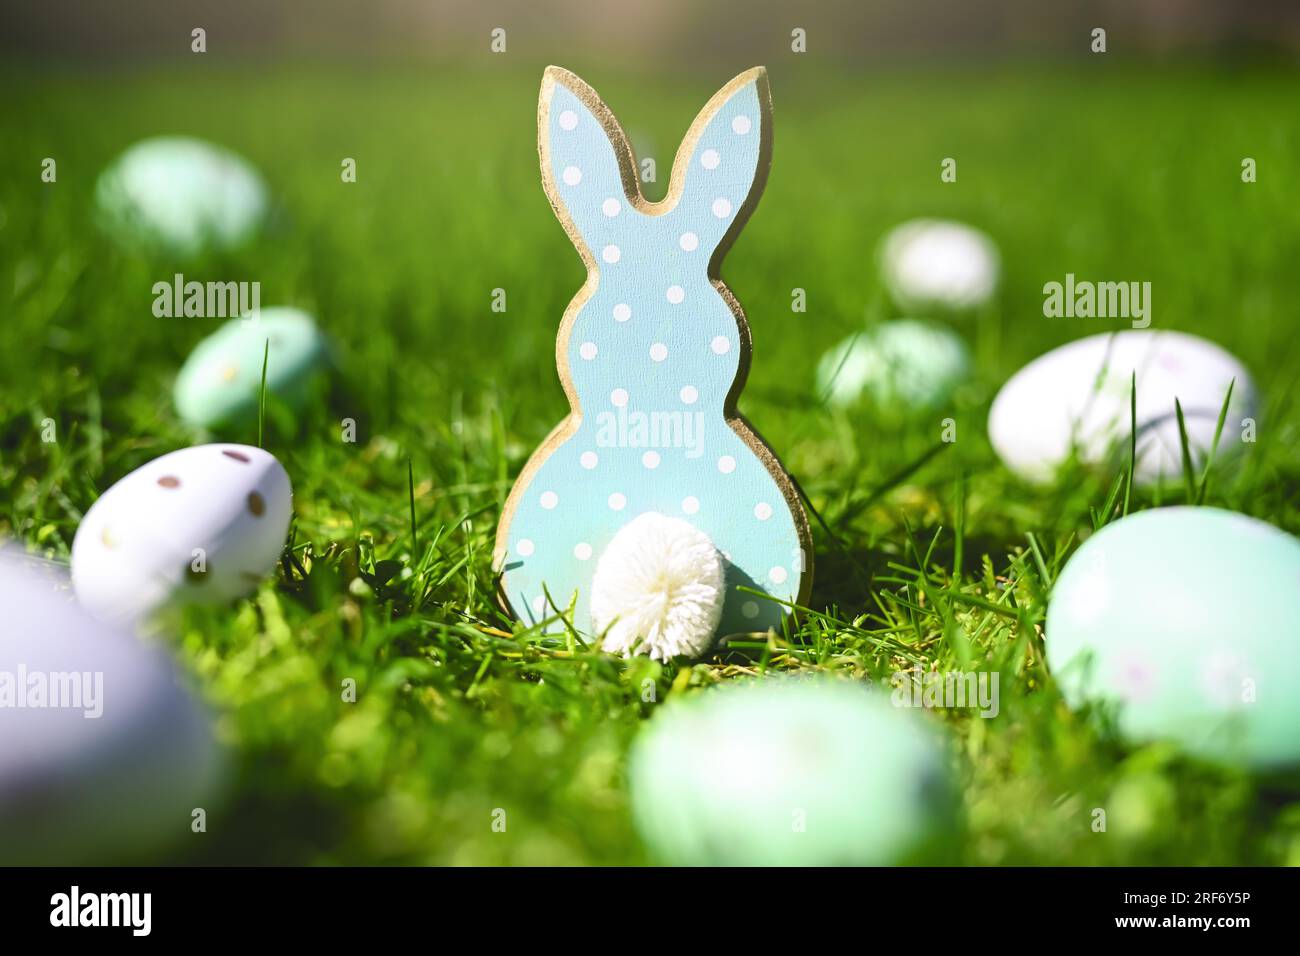 Osterhasenfigur mit Ostereiern auf dem Rasen Stock Photo